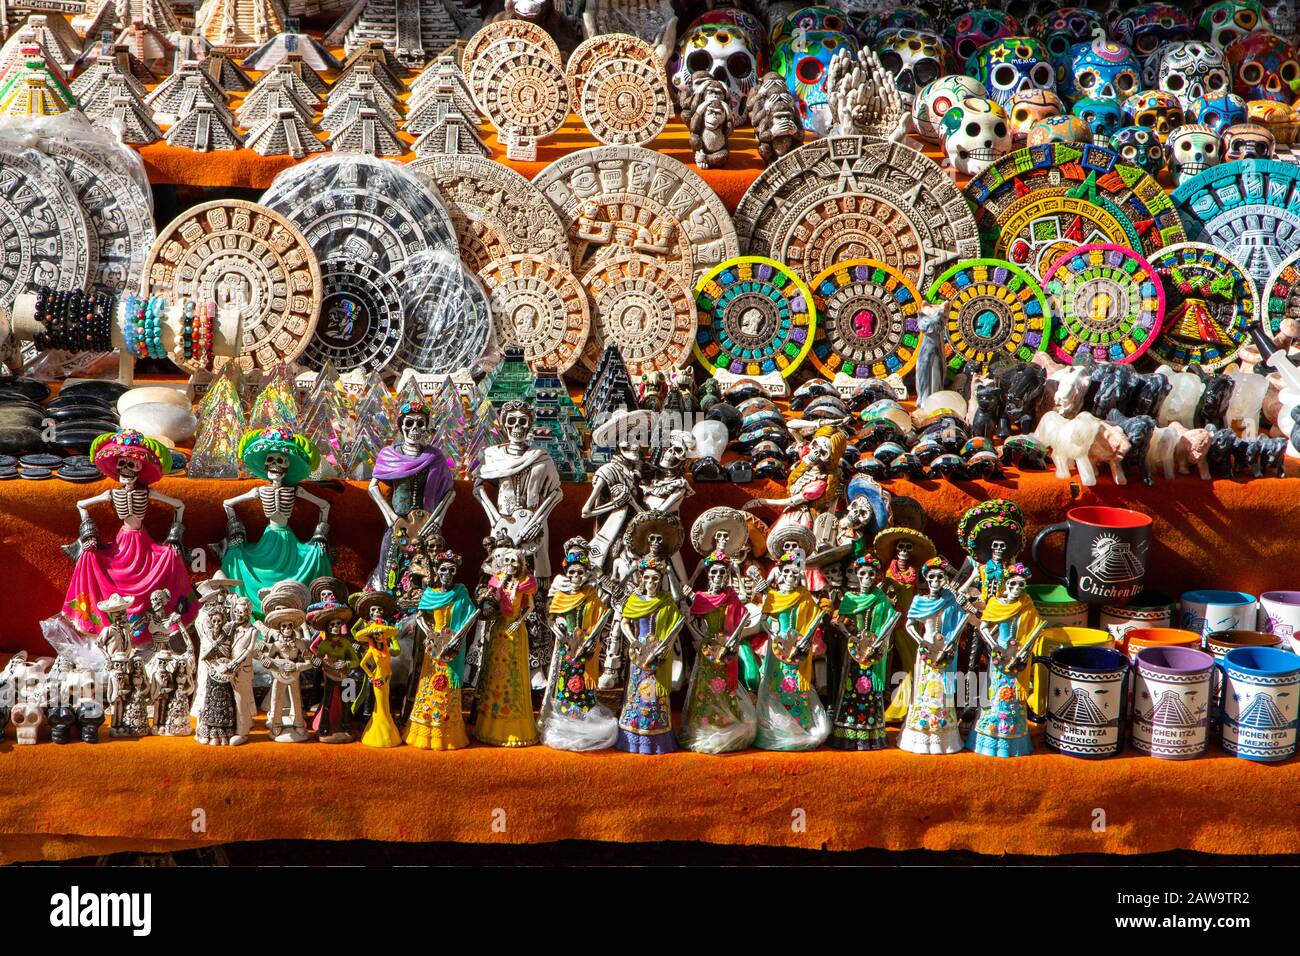 Tipici souvenir in legno intagliato in un mercato messicano locale a Chichen Itza, penisola dello Yucatan, Messico. Foto Stock